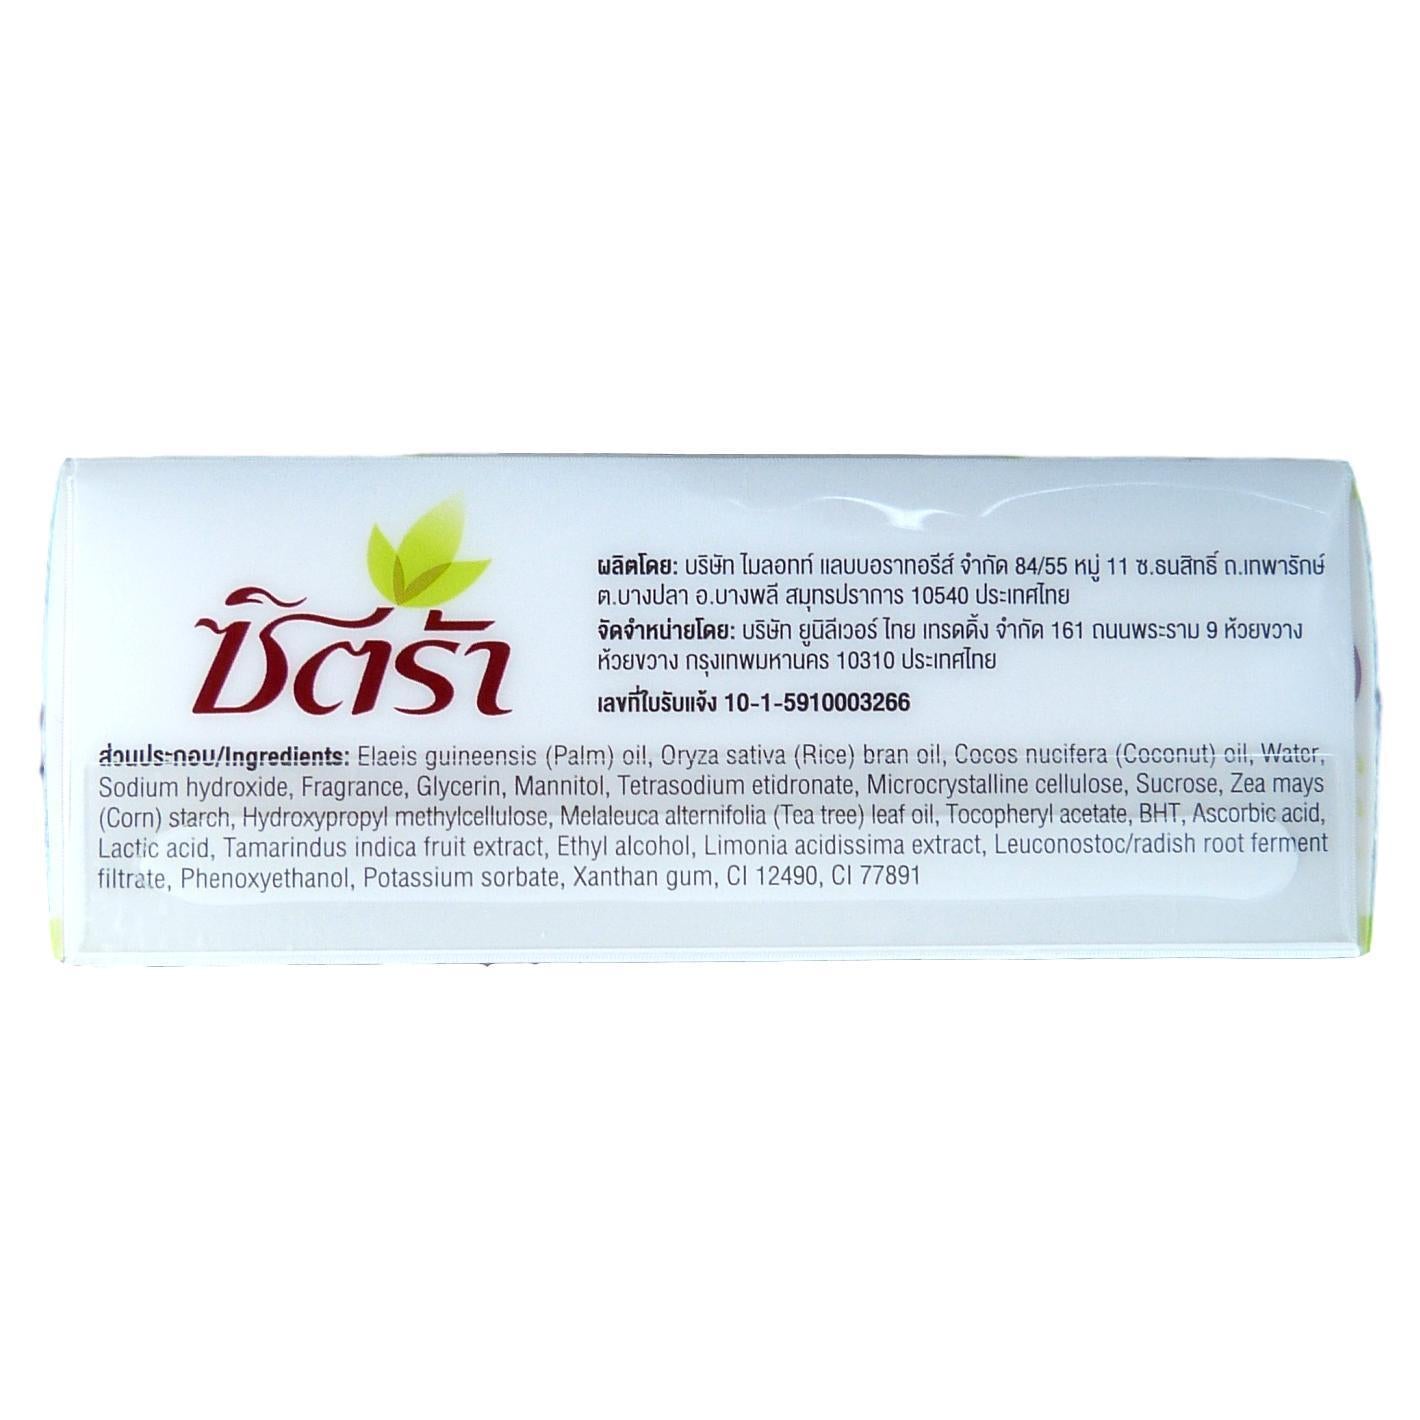 Citra Thanaka Whitening Exfoliating Scrub Natural Herbal Soap Bar 110 grams - Asian Beauty Supply